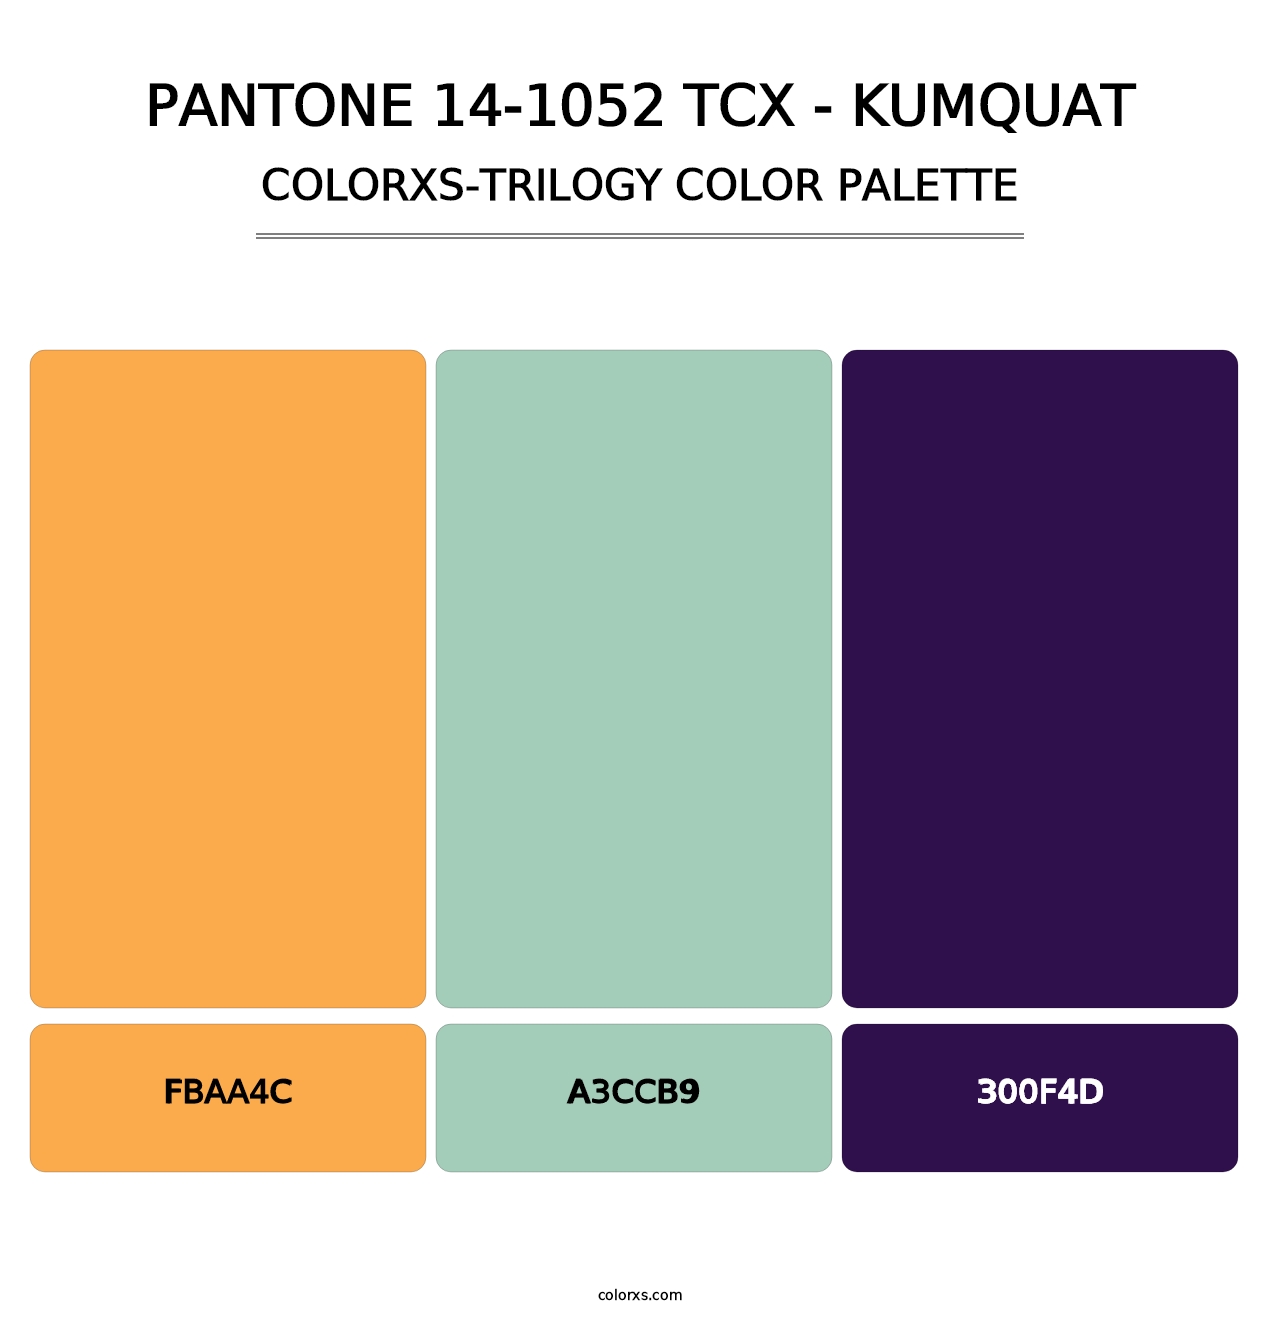 PANTONE 14-1052 TCX - Kumquat - Colorxs Trilogy Palette